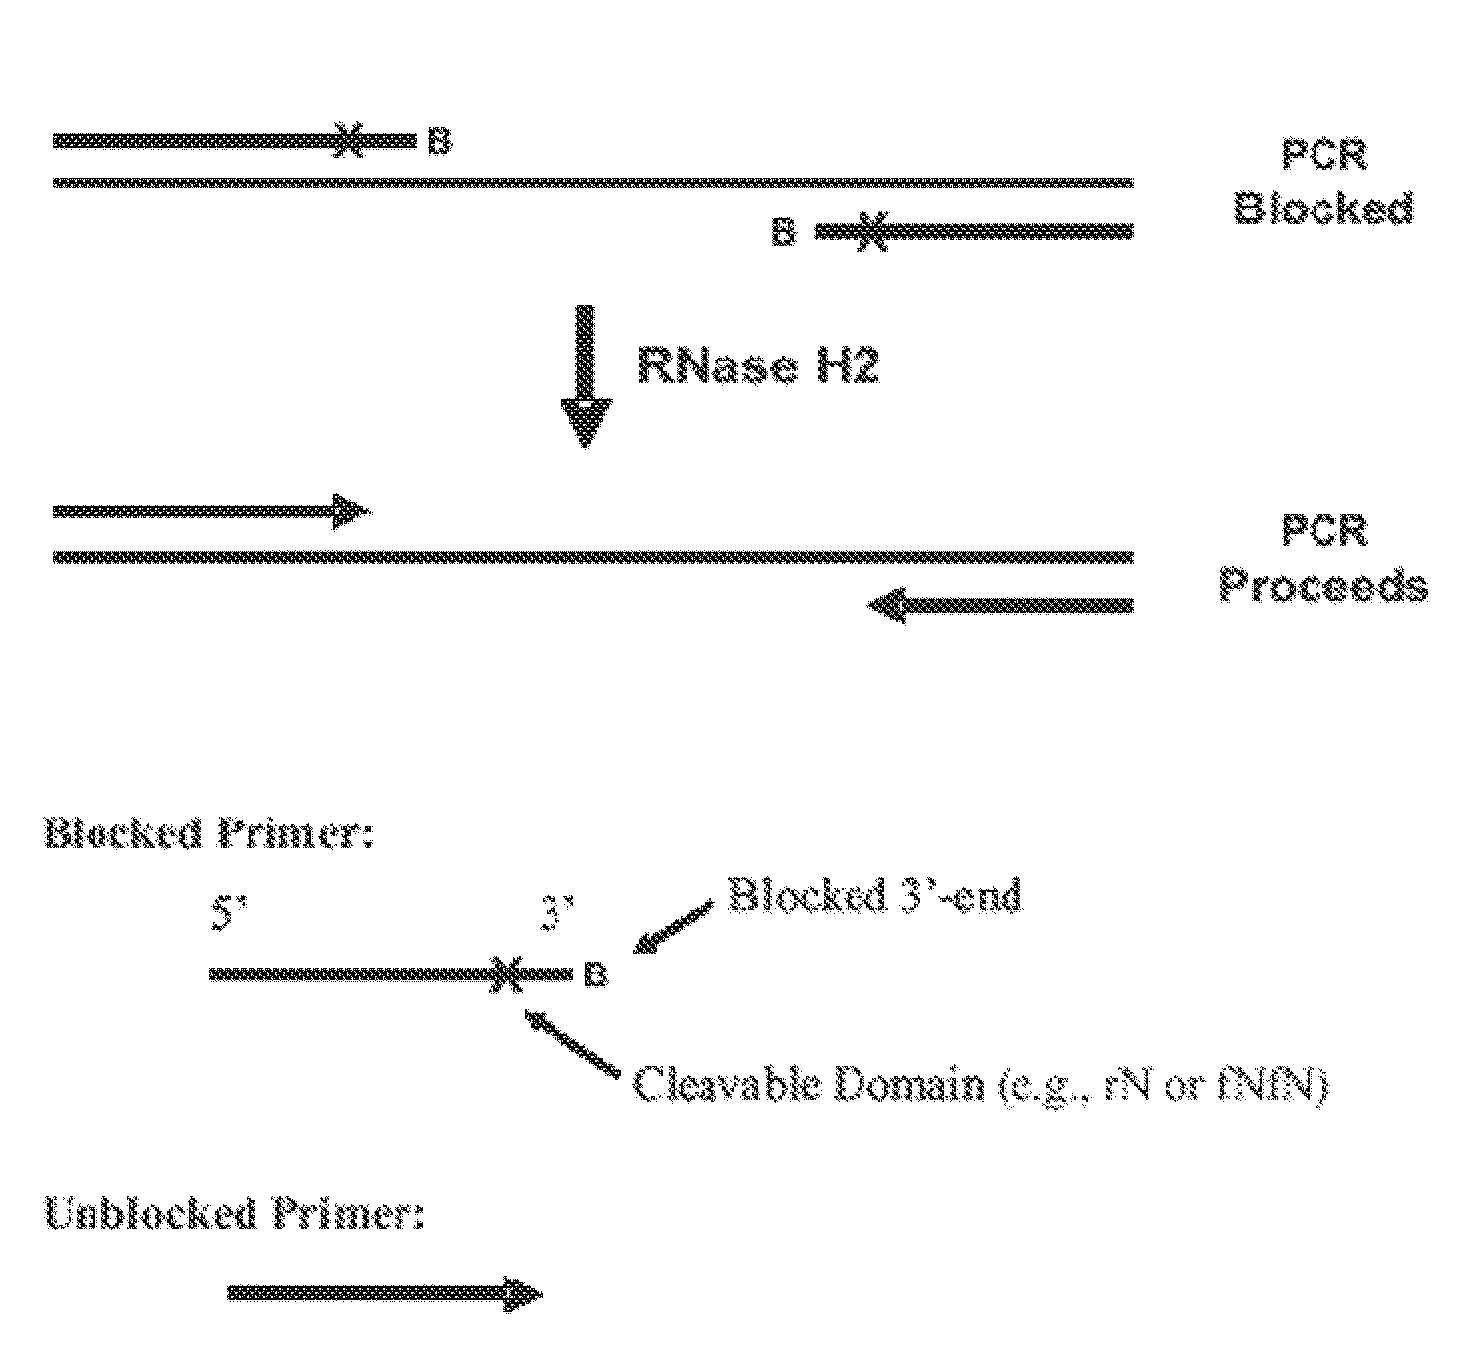 RNase H-based assays utilizing modified RNA monomers